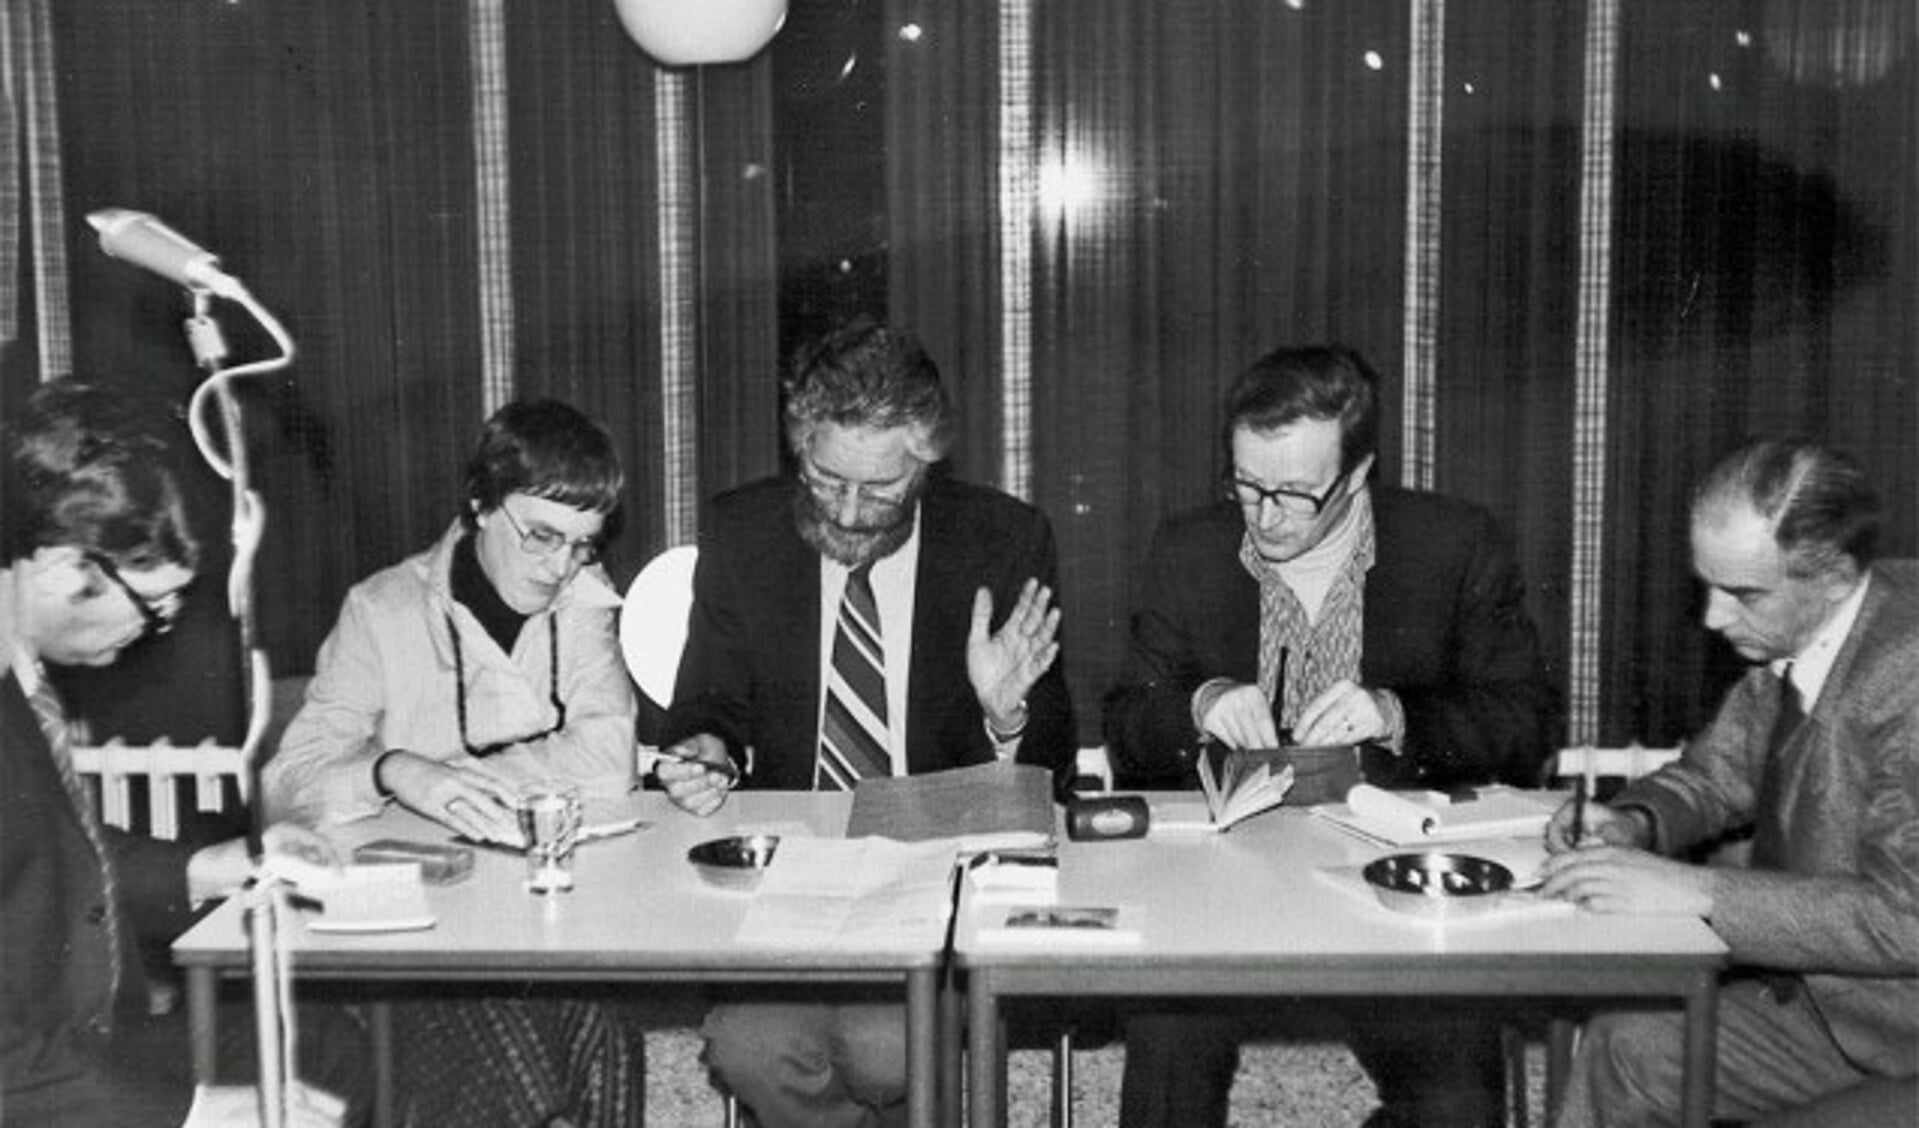 Het bestuur tijdens de jaarvergadering van Oud-Wageningen in 1977.Van links naar rechts: Anton Zeven, Lucy Elders-Vonk, Jan de Goede, Anton Steenbergen en Ad Rietveld. (foto: HV Oud Wageningen / A.G. Steenbergen)